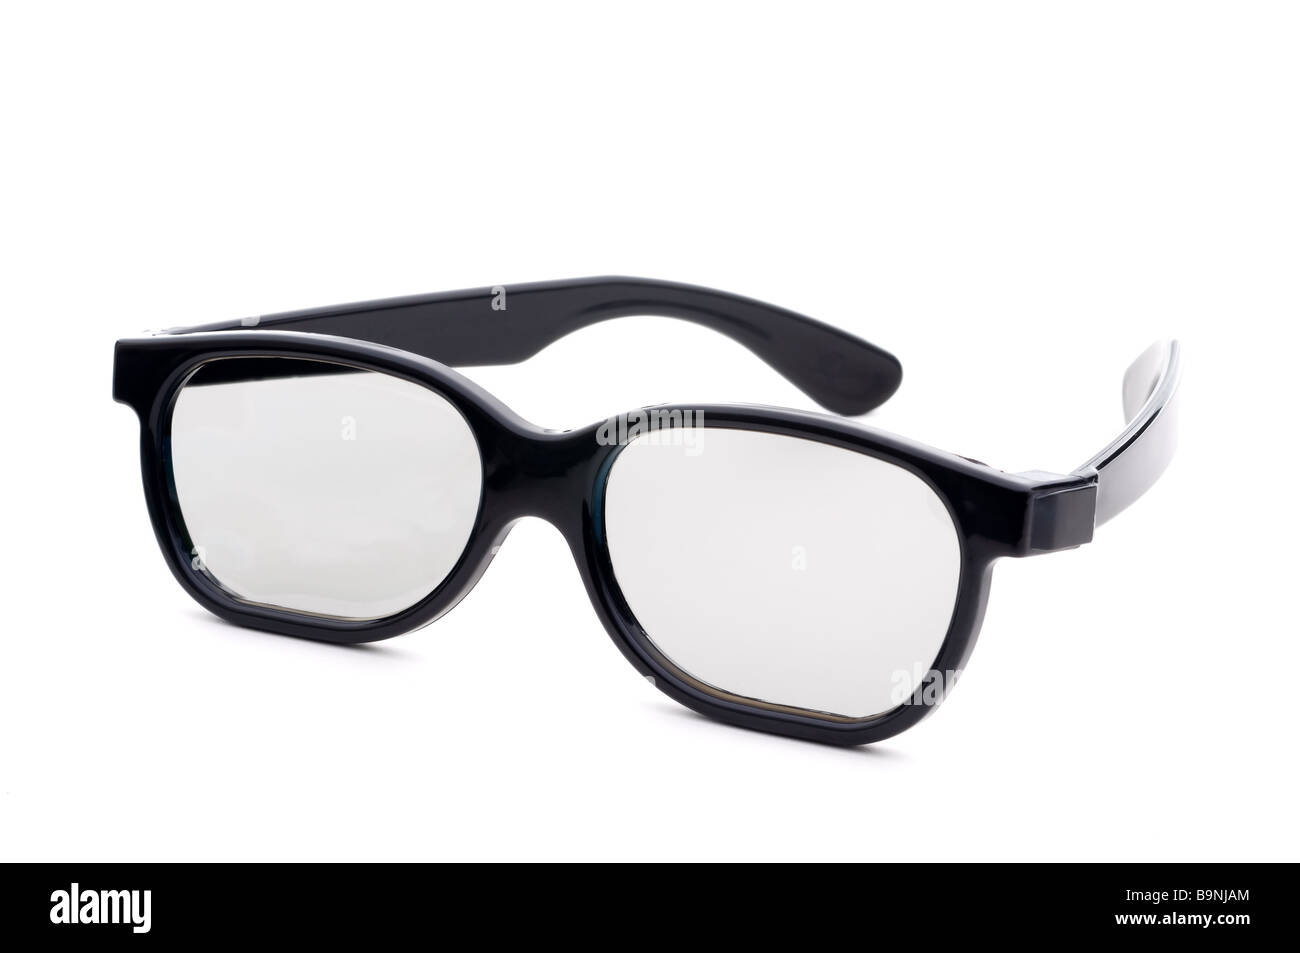 Occhio nero occhiali con lenti colorate su sfondo bianco Foto Stock